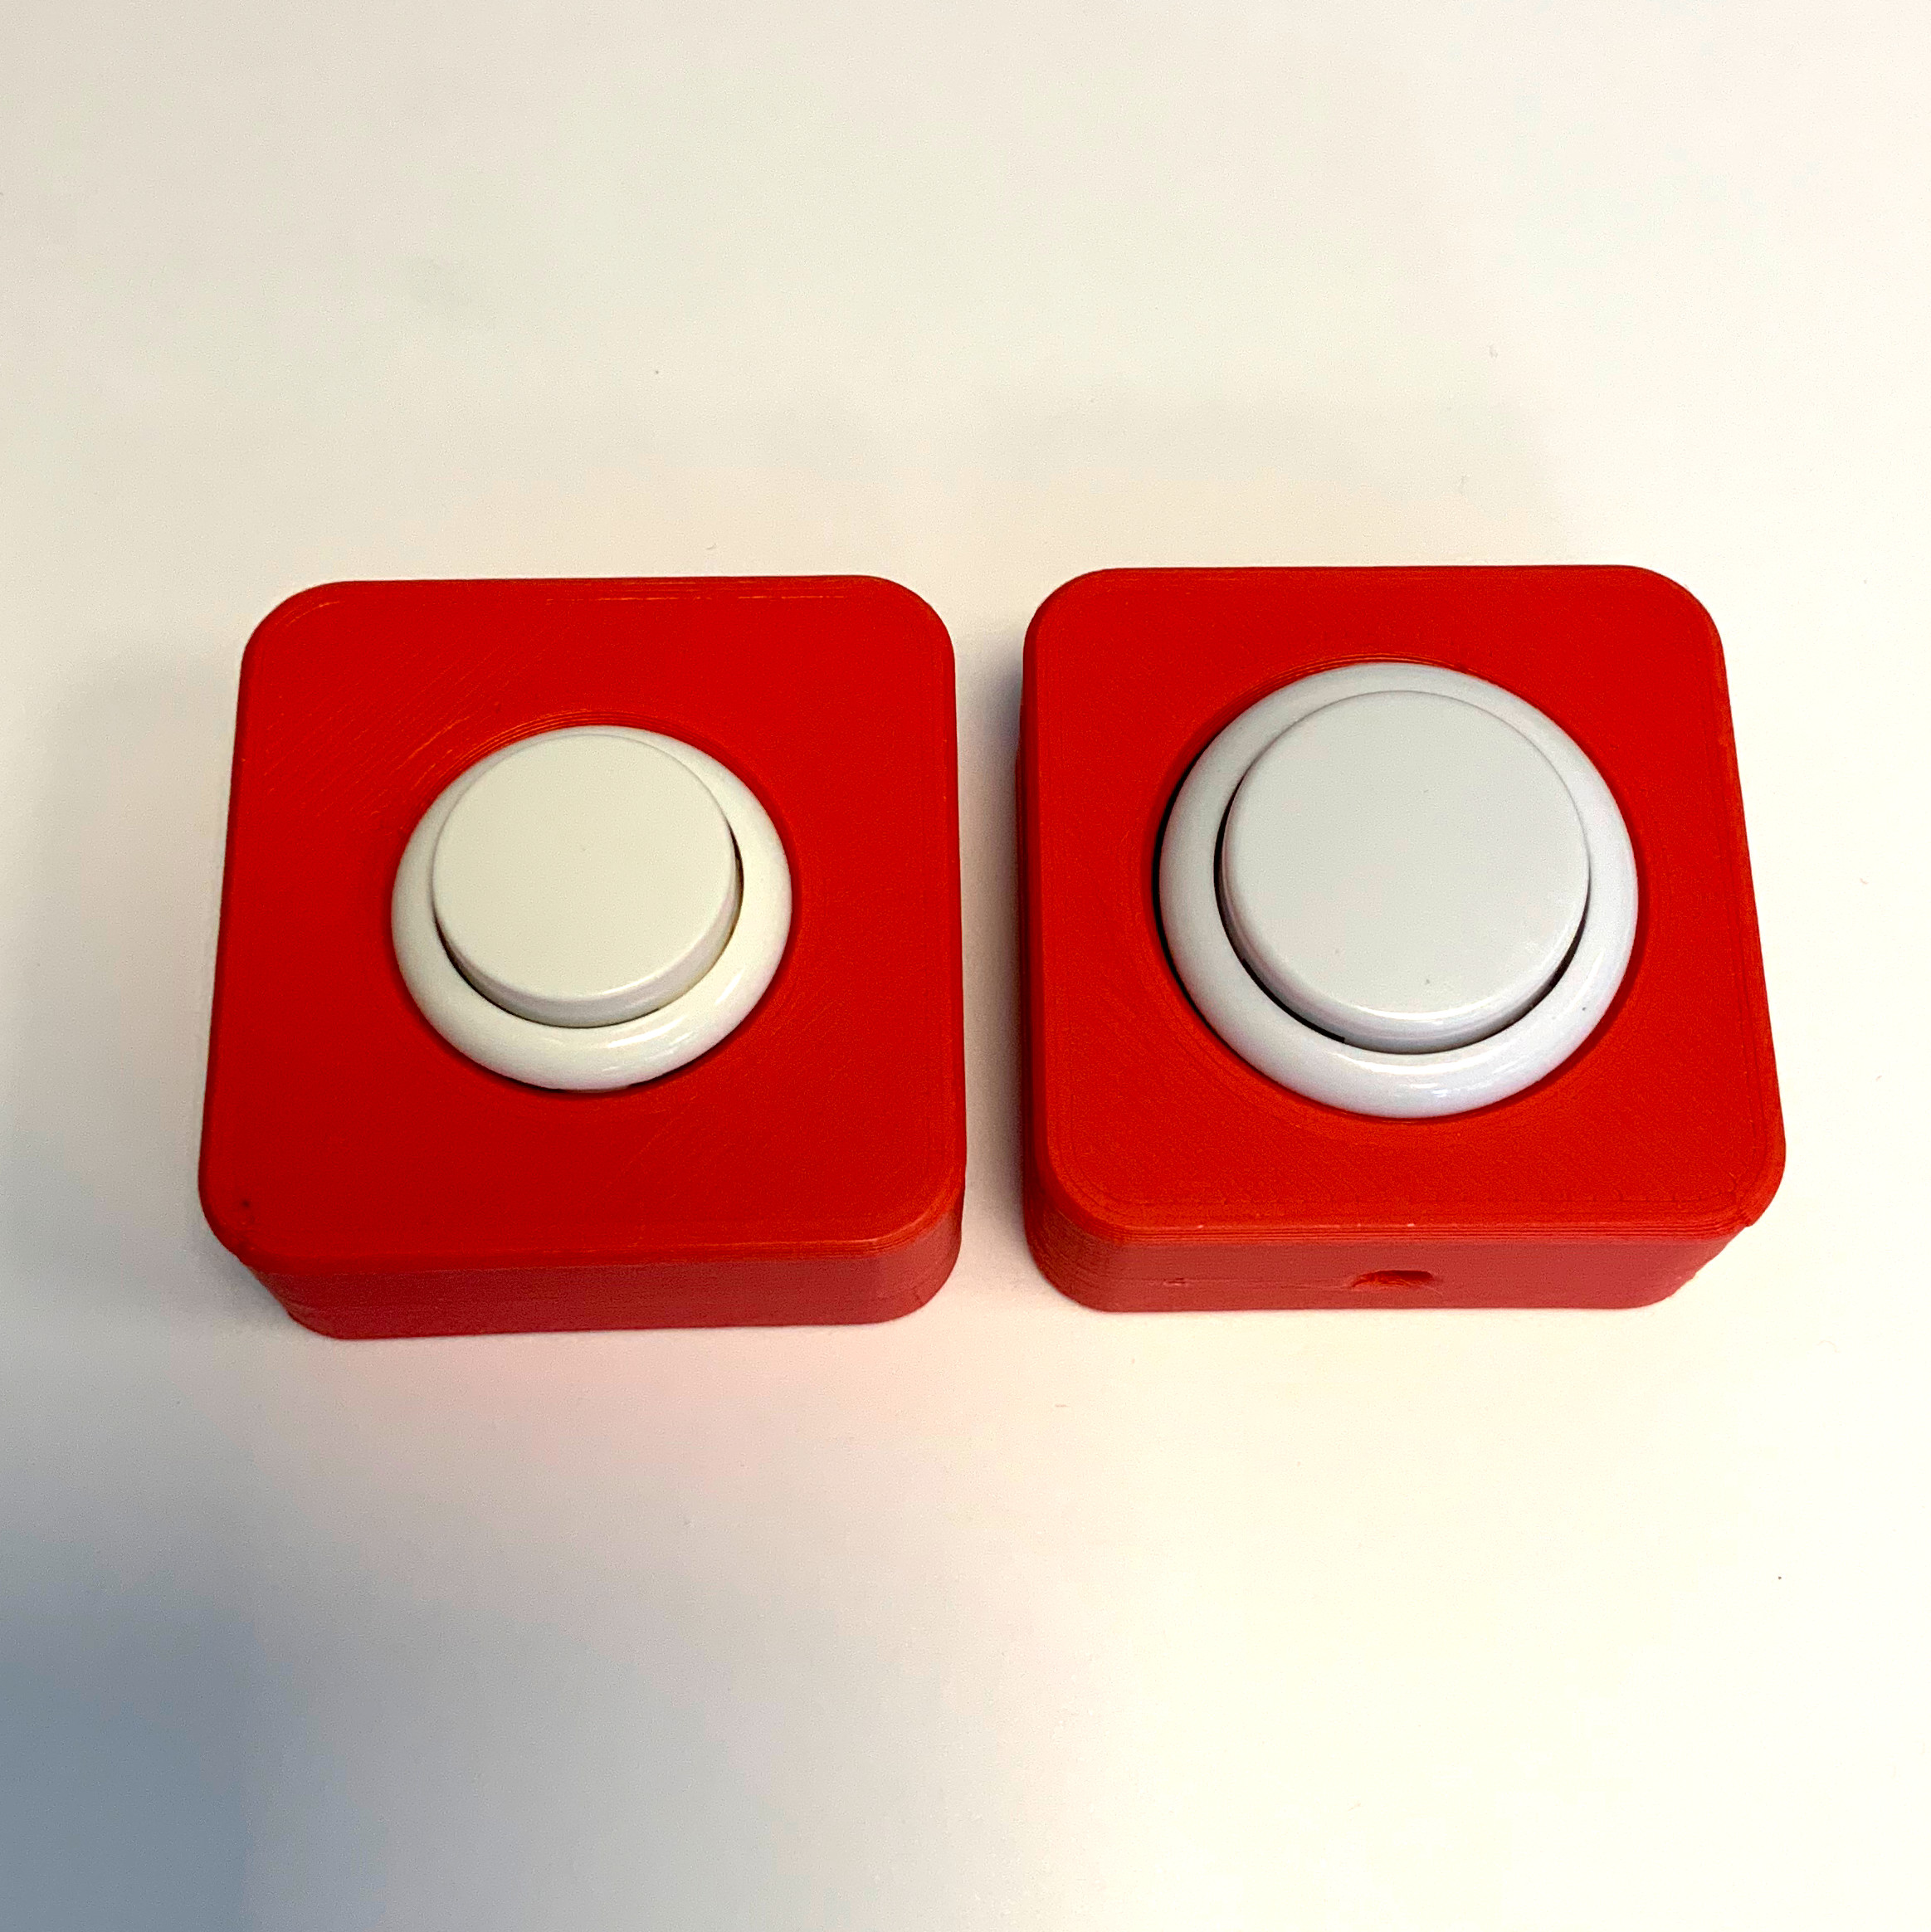 2 rote Buttons mit weißem Knopf. 24mm und 30mm Knopfdurchmesser.